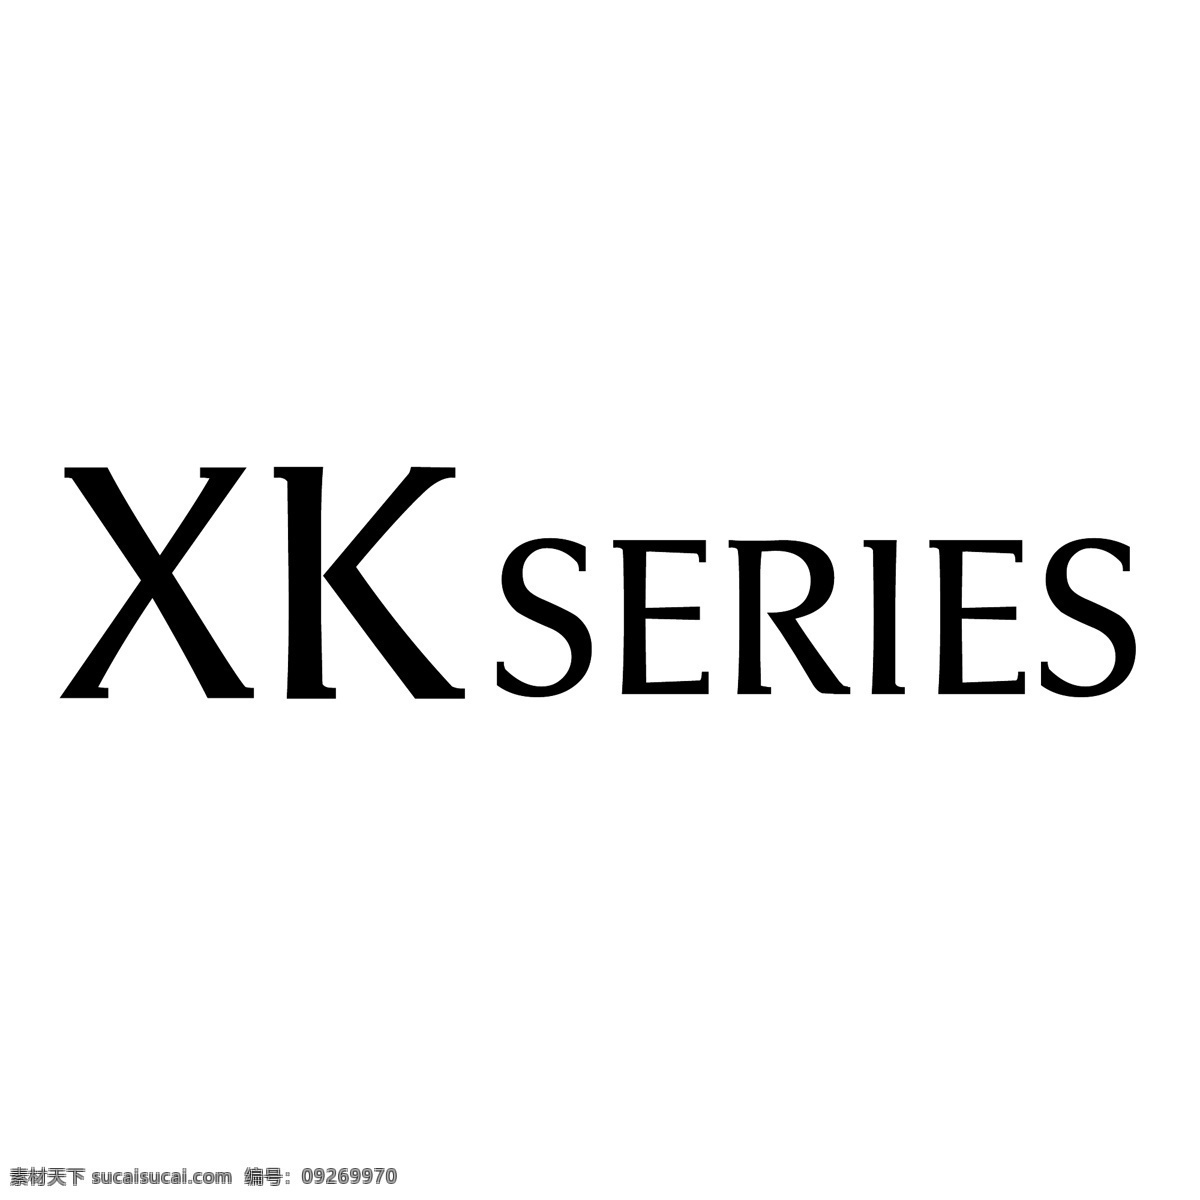 xk 系列 标识 公司 免费 品牌 品牌标识 商标 矢量标志下载 免费矢量标识 矢量 psd源文件 logo设计